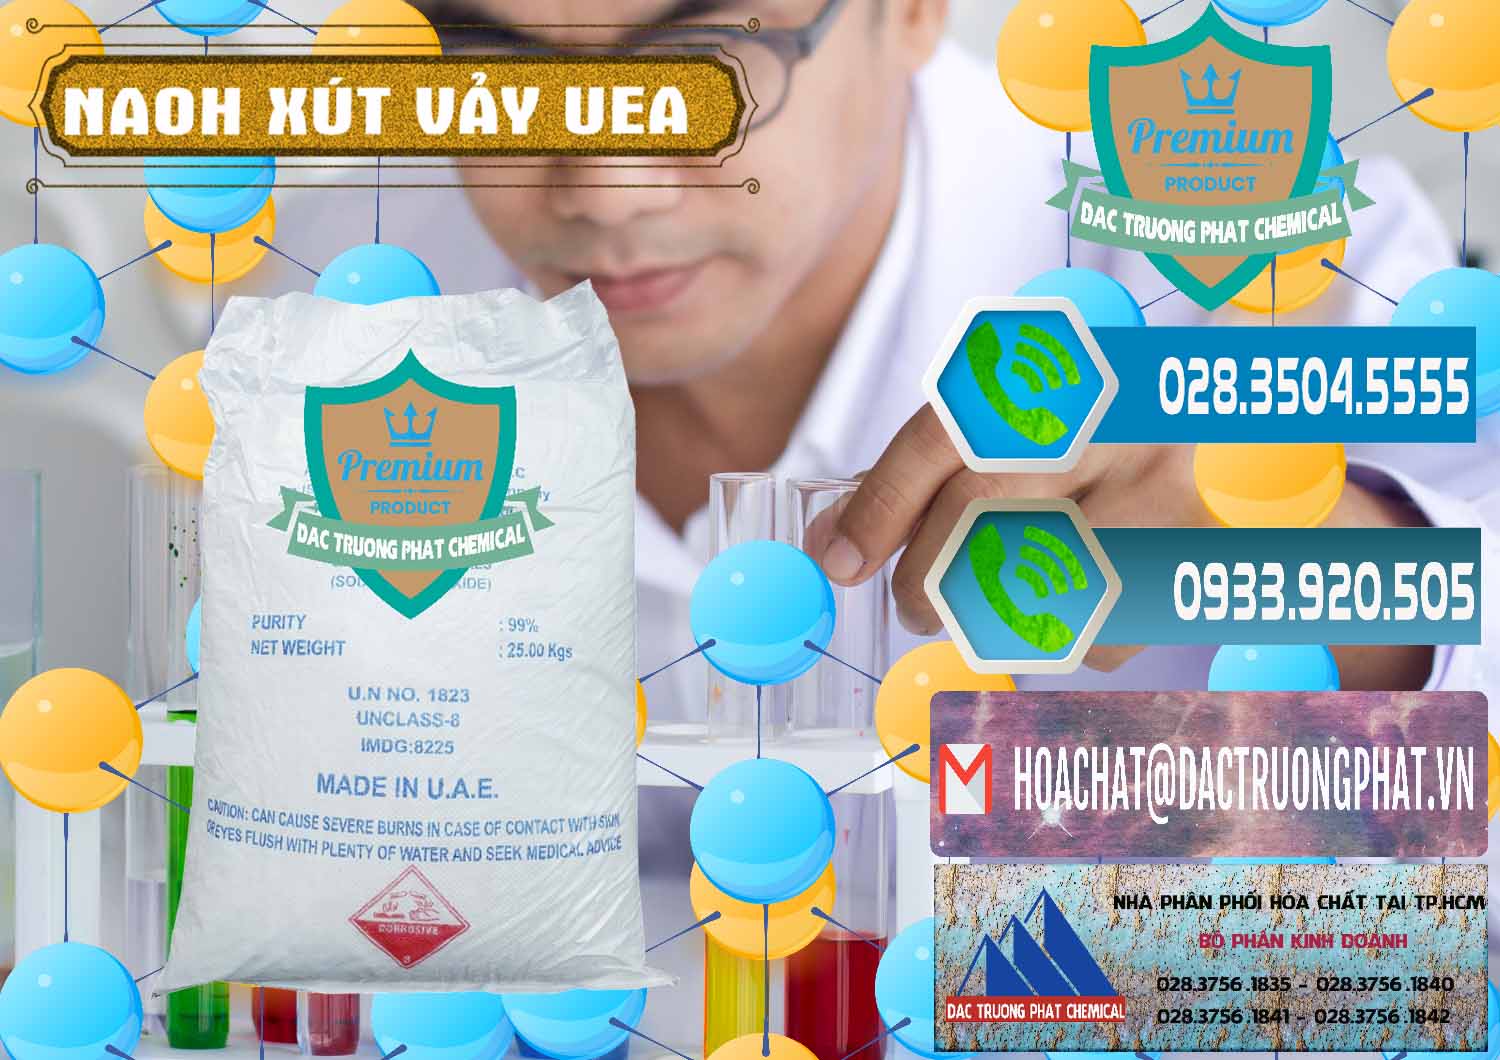 Nơi cung cấp _ bán Xút Vảy - NaOH Vảy UAE Iran - 0432 - Công ty chuyên phân phối và cung ứng hóa chất tại TP.HCM - congtyhoachat.net